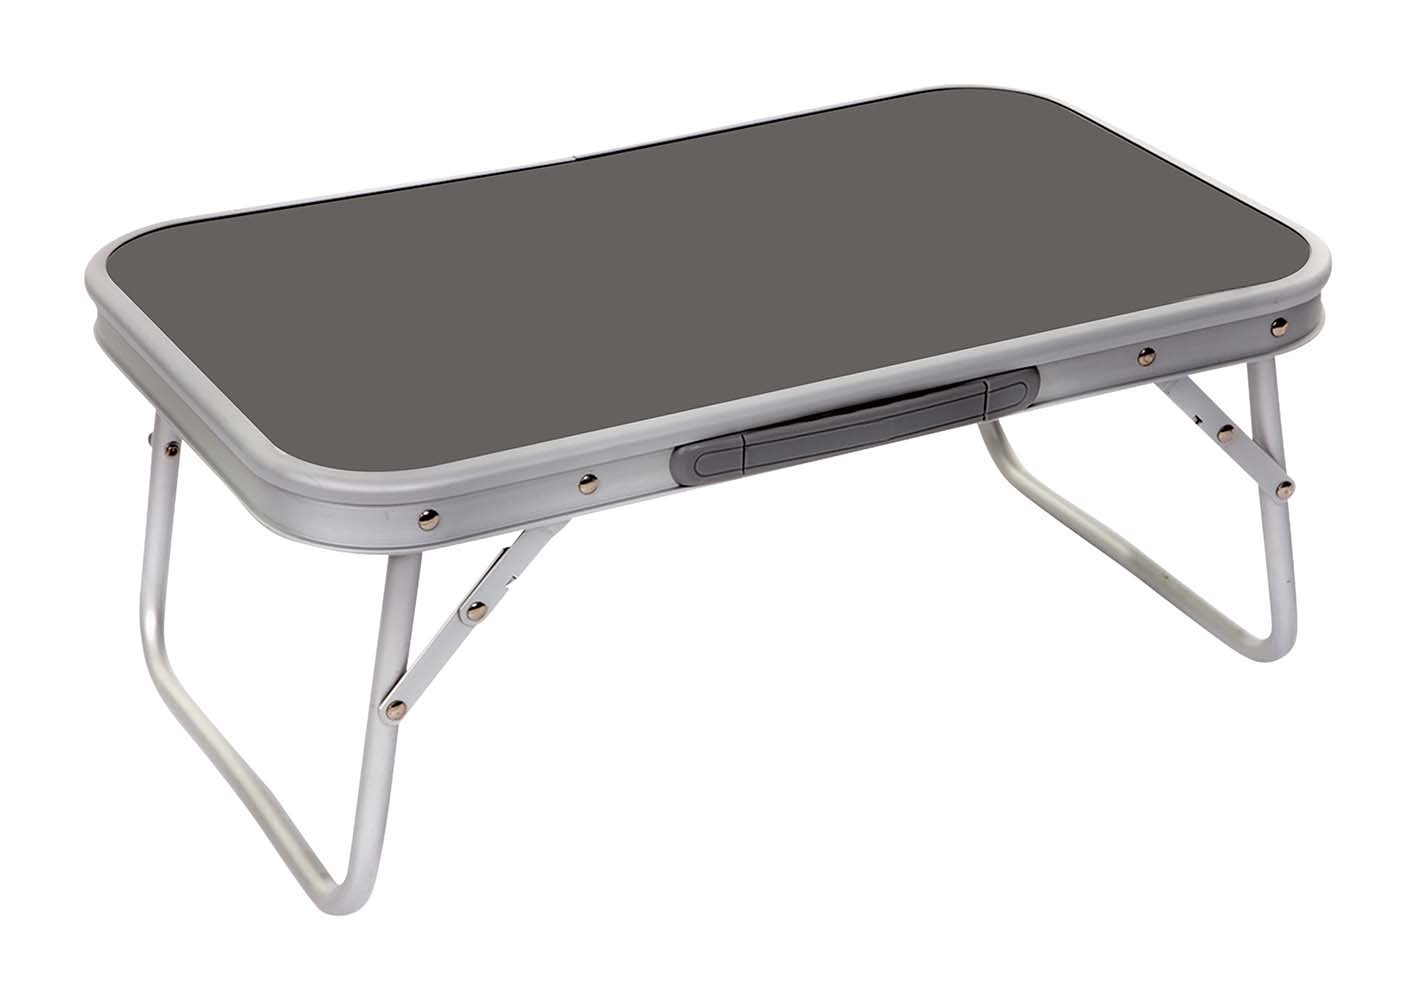 1404359 Een extra lage en compacte tafel. Deze klaptafel is een laag model met inklapbare poten. Gemaakt van stevig en lichtgewicht aluminium. Ingeklapt (lxbxh): 56x34x3,5 centimeter.